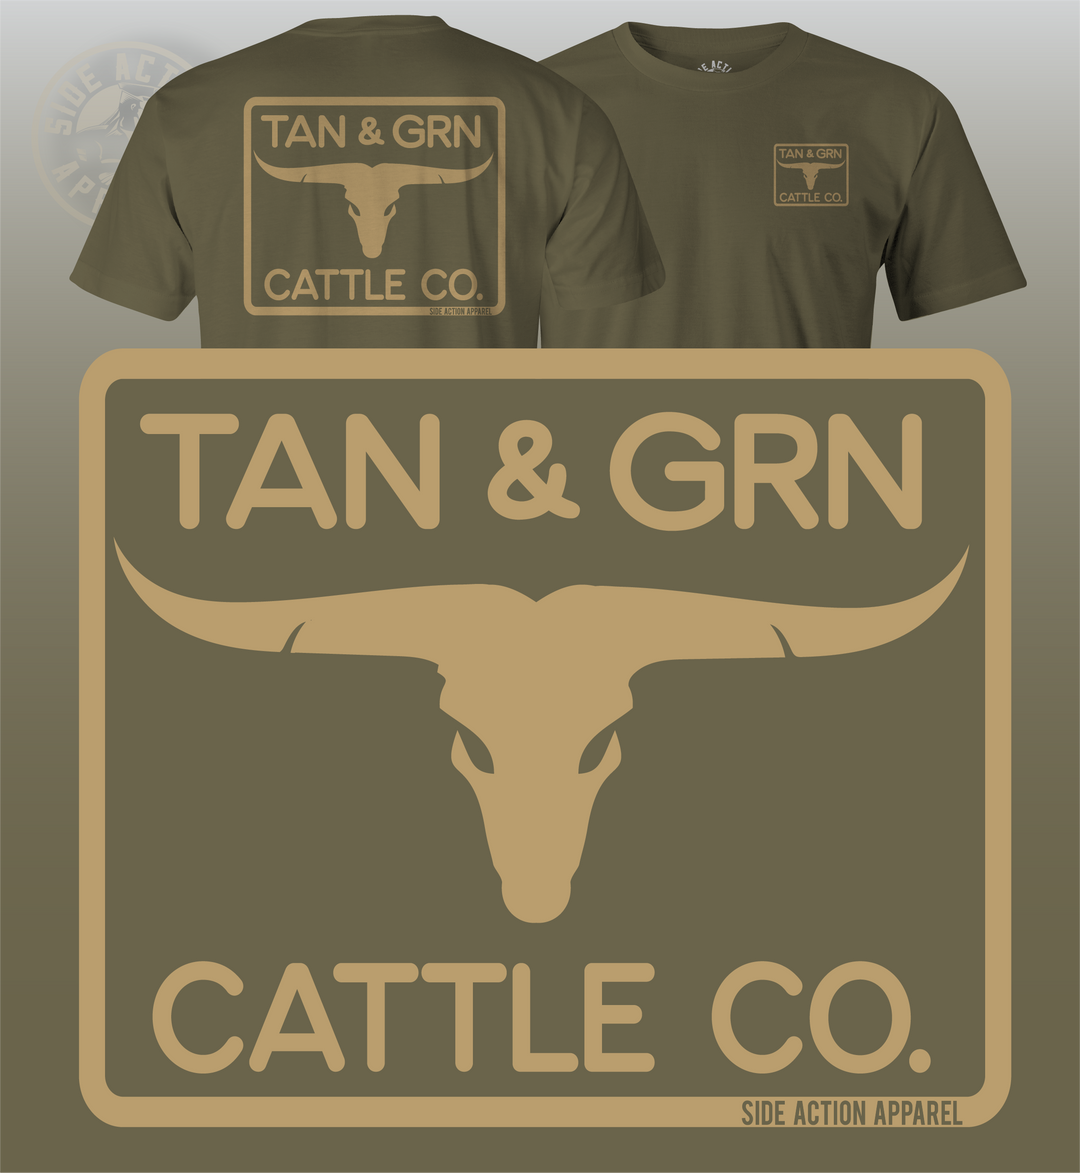 Tan & Grn Cattle Co.